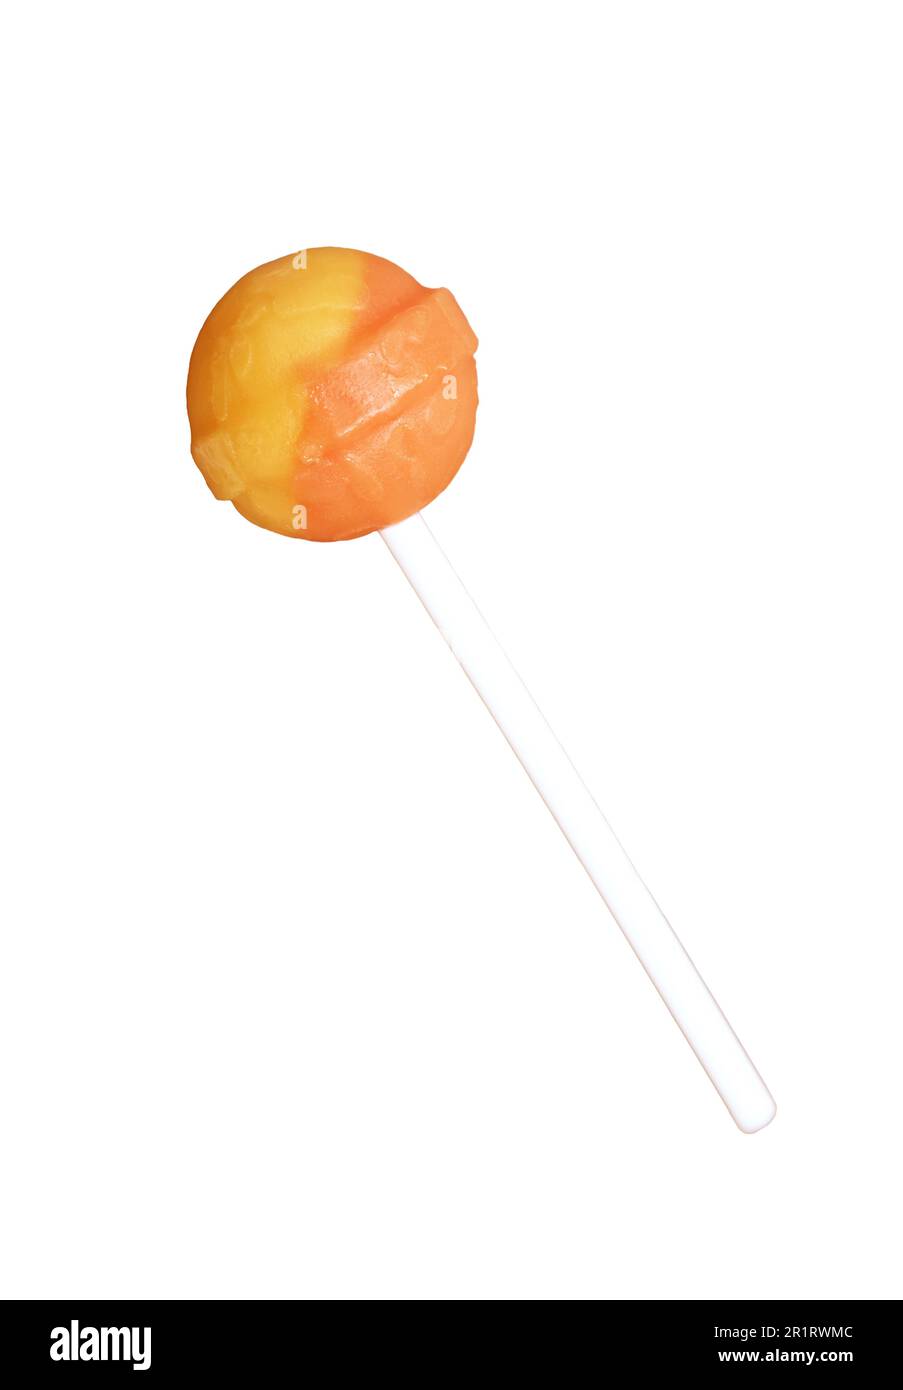 Candy de Lollipop d'orange et de citron isolée sur fond blanc Banque D'Images